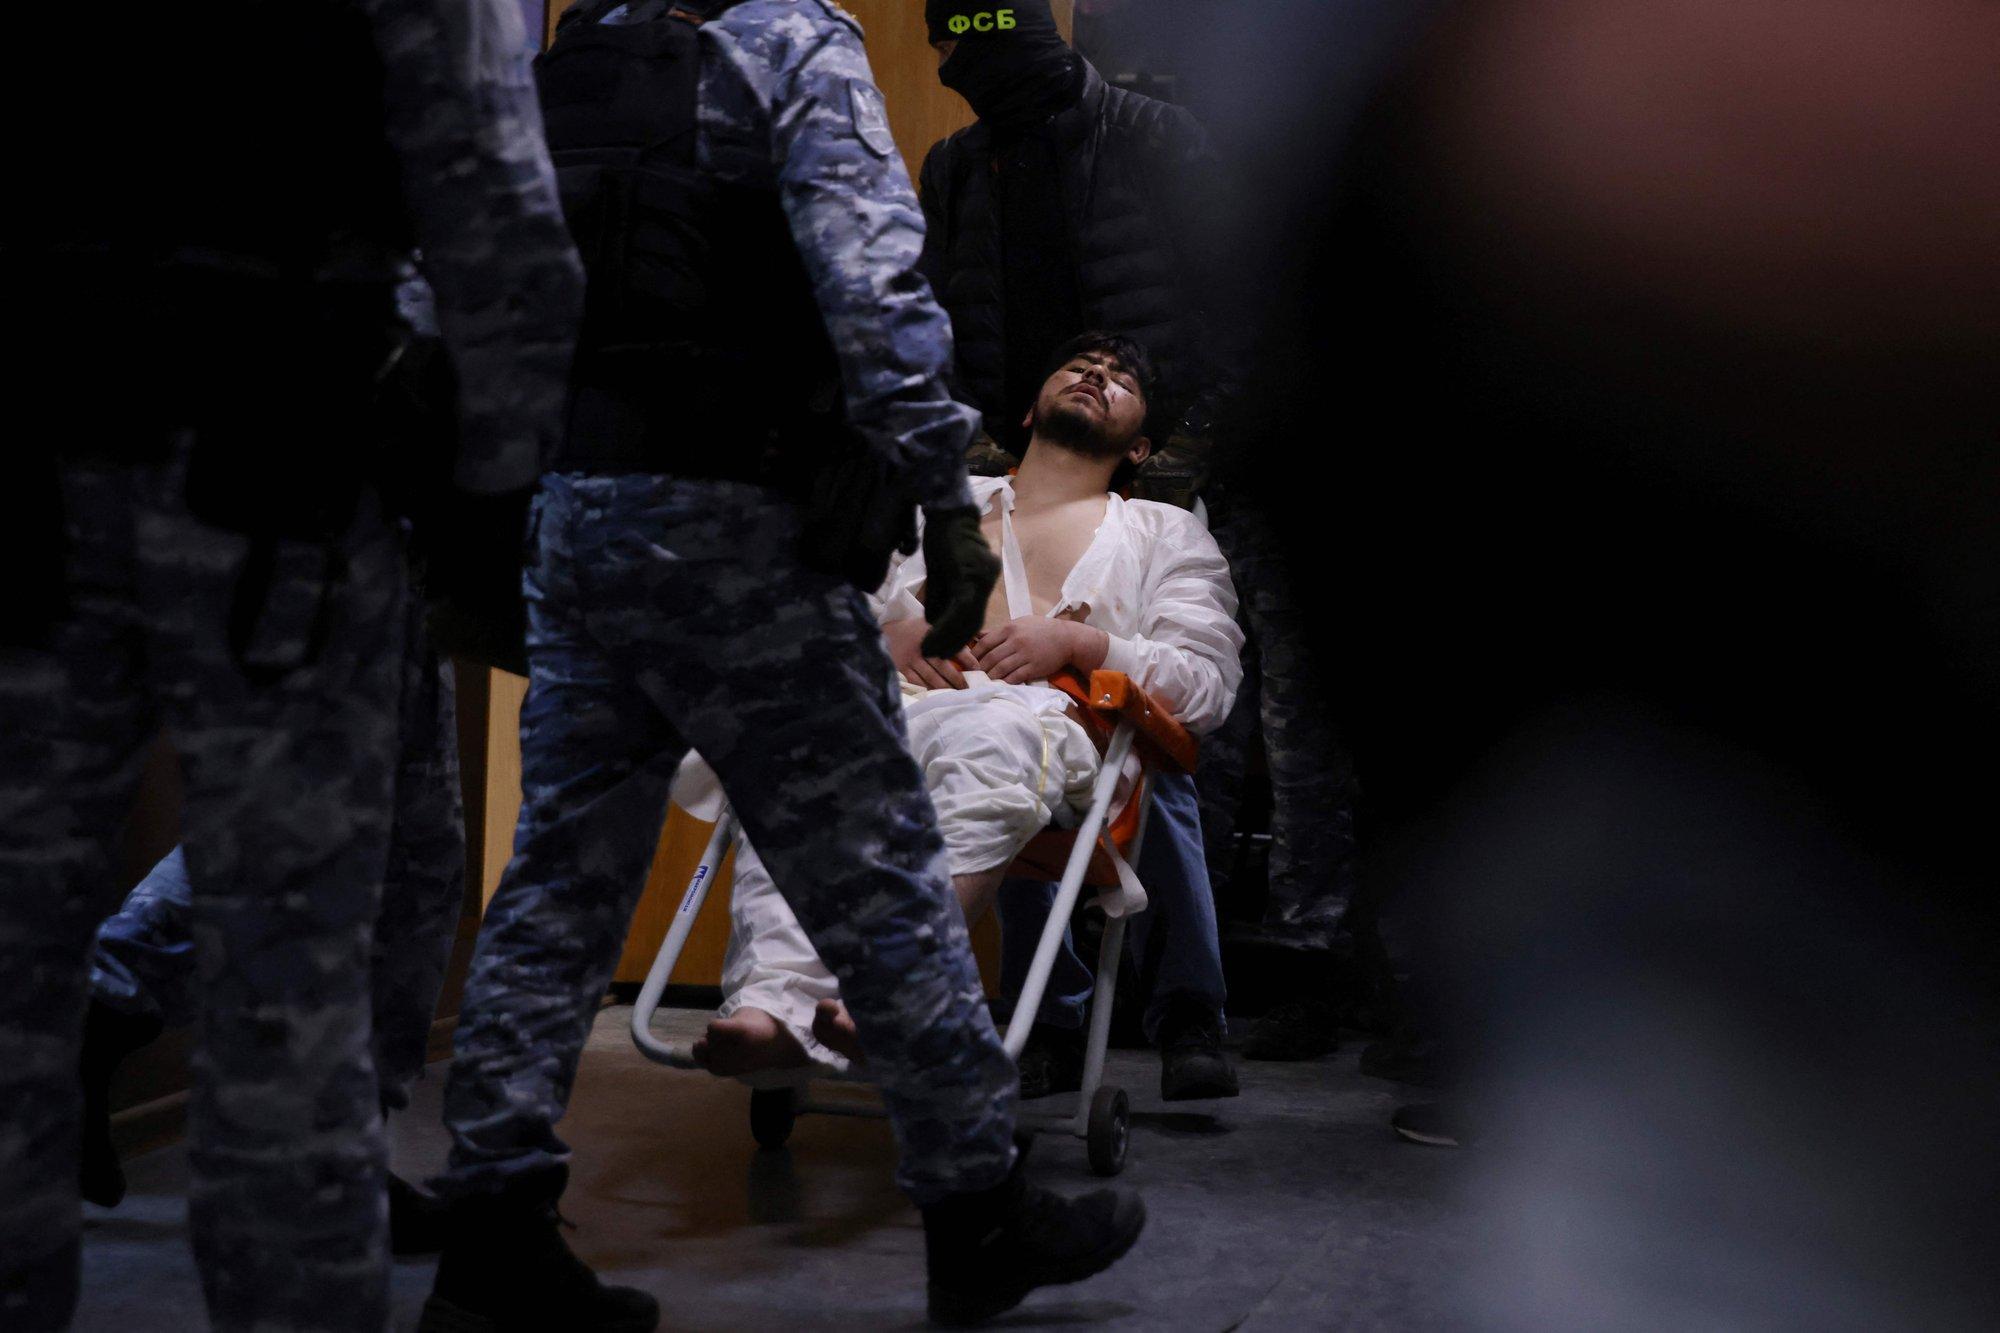 Москалькова: Применение пыток к задержанным недопустимо